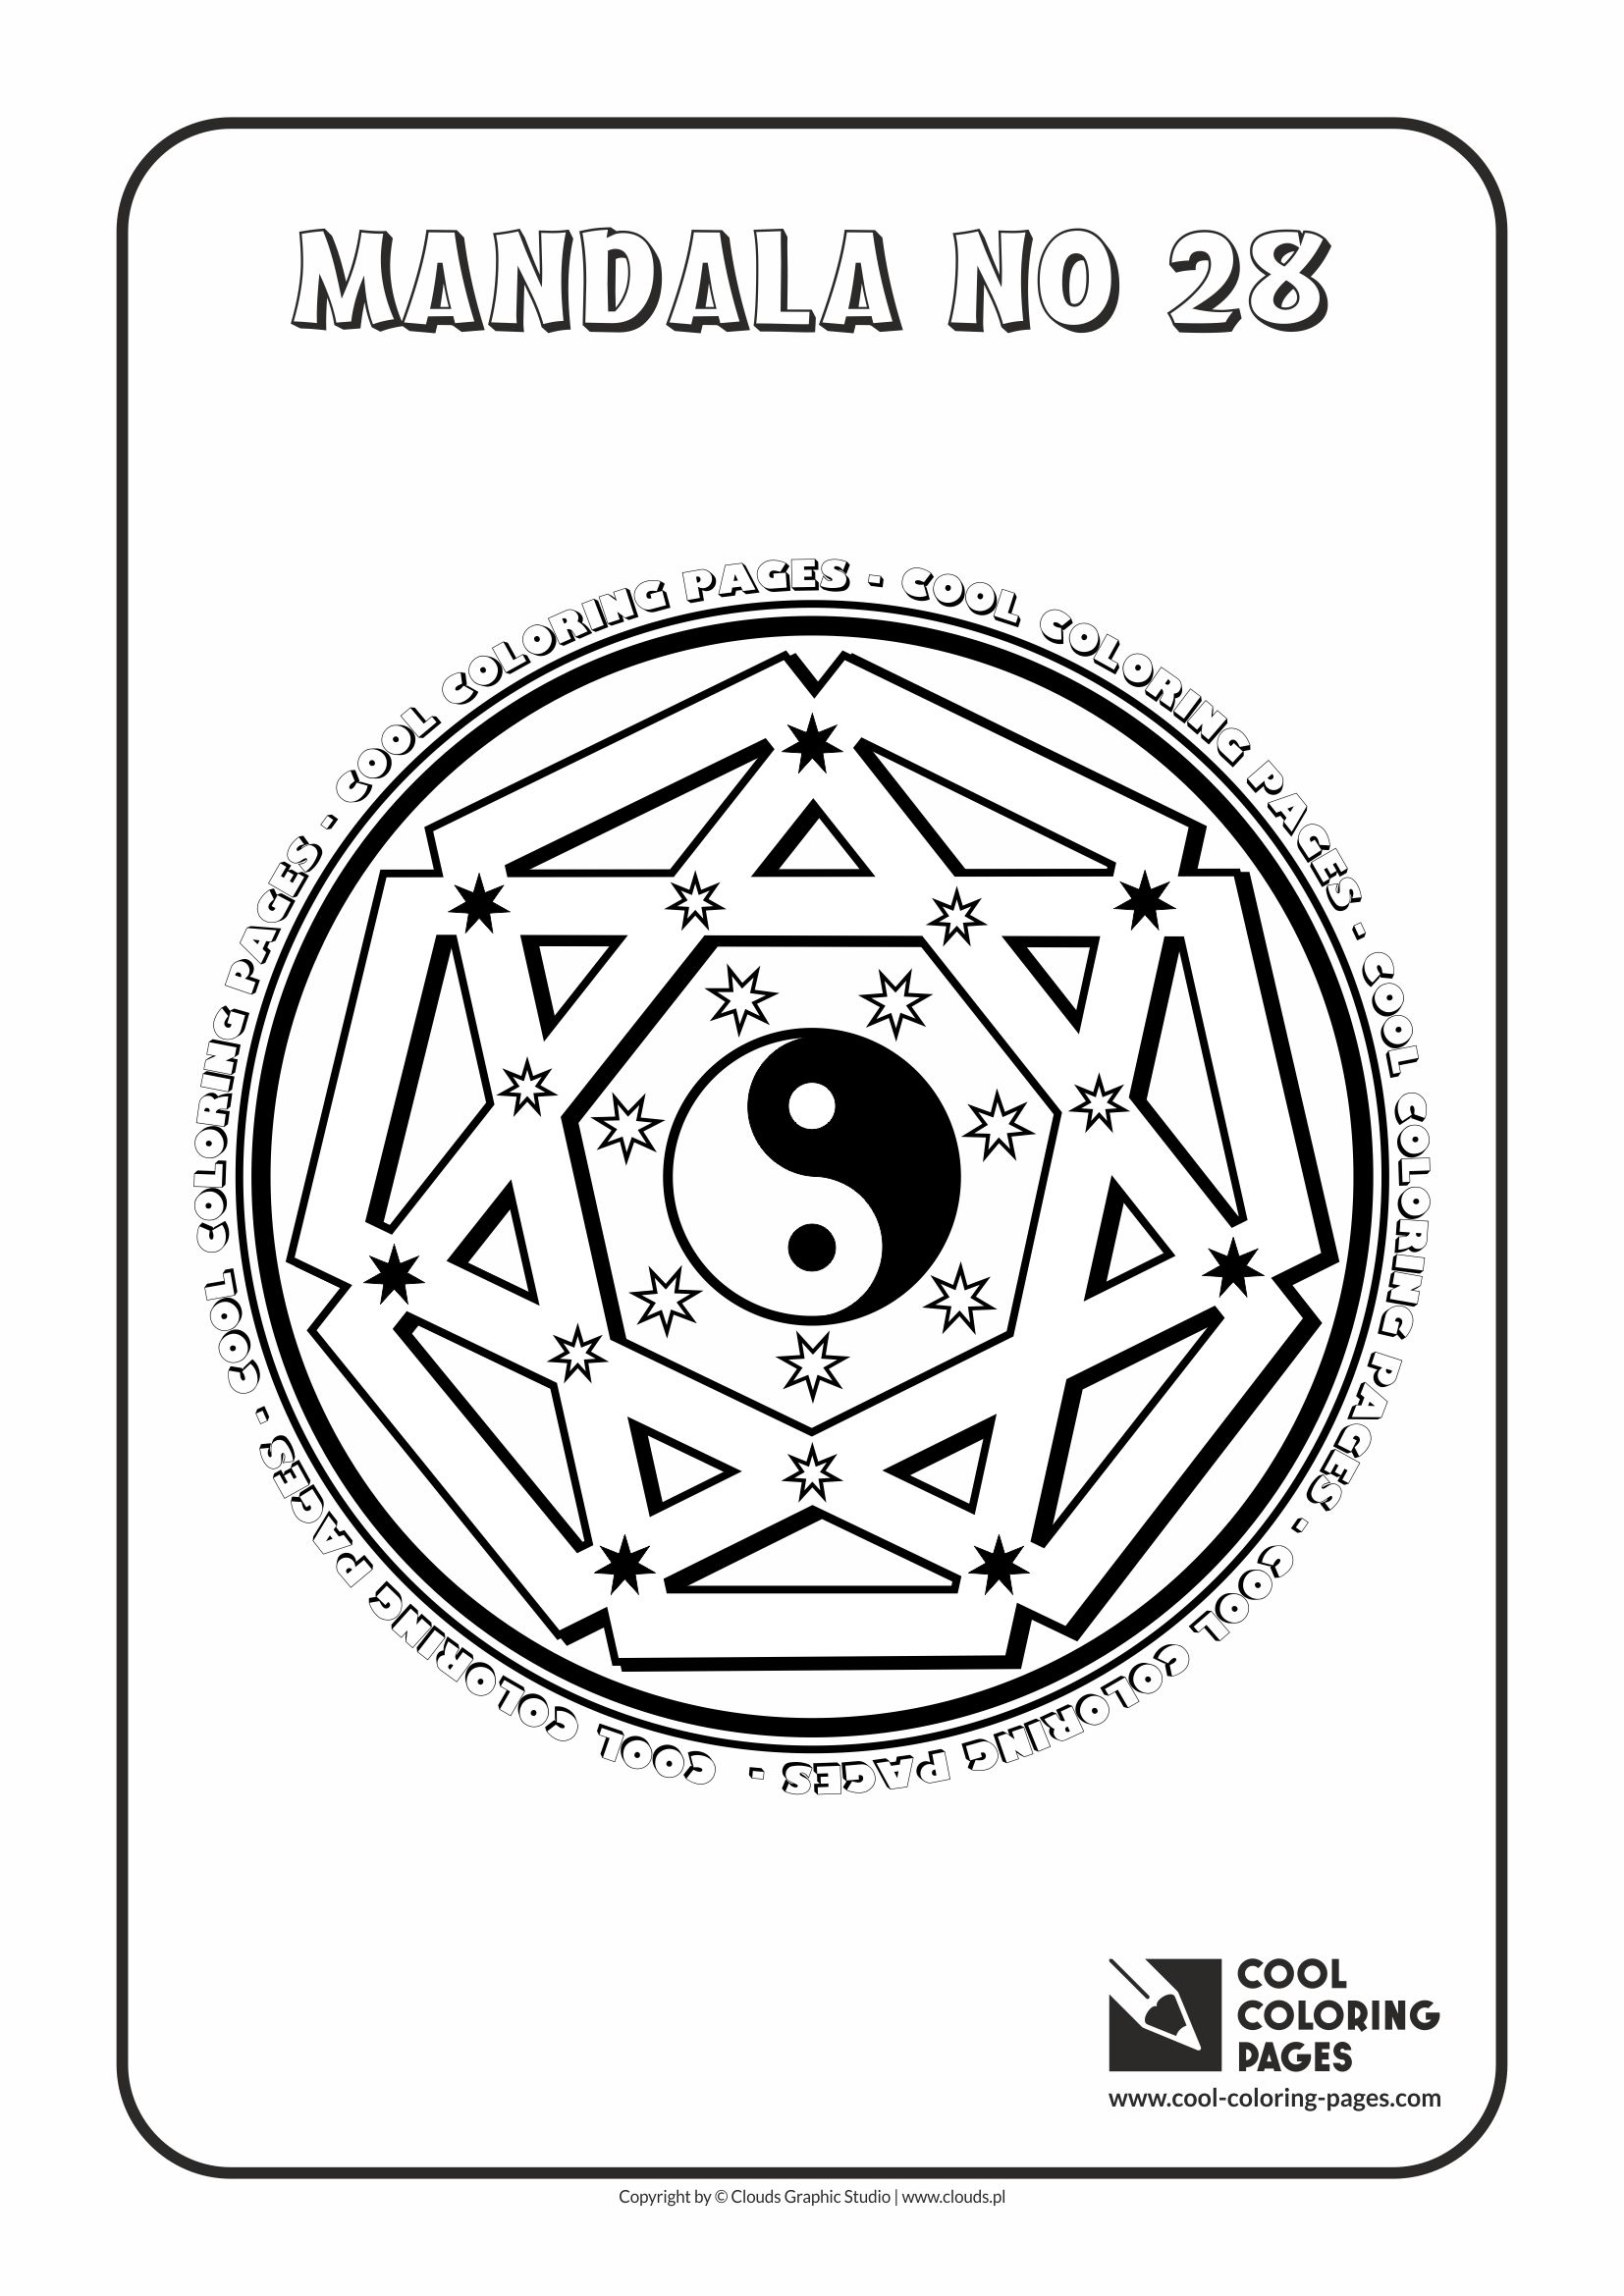 Cool Coloring Pages - Mandalas / Mandala no 28